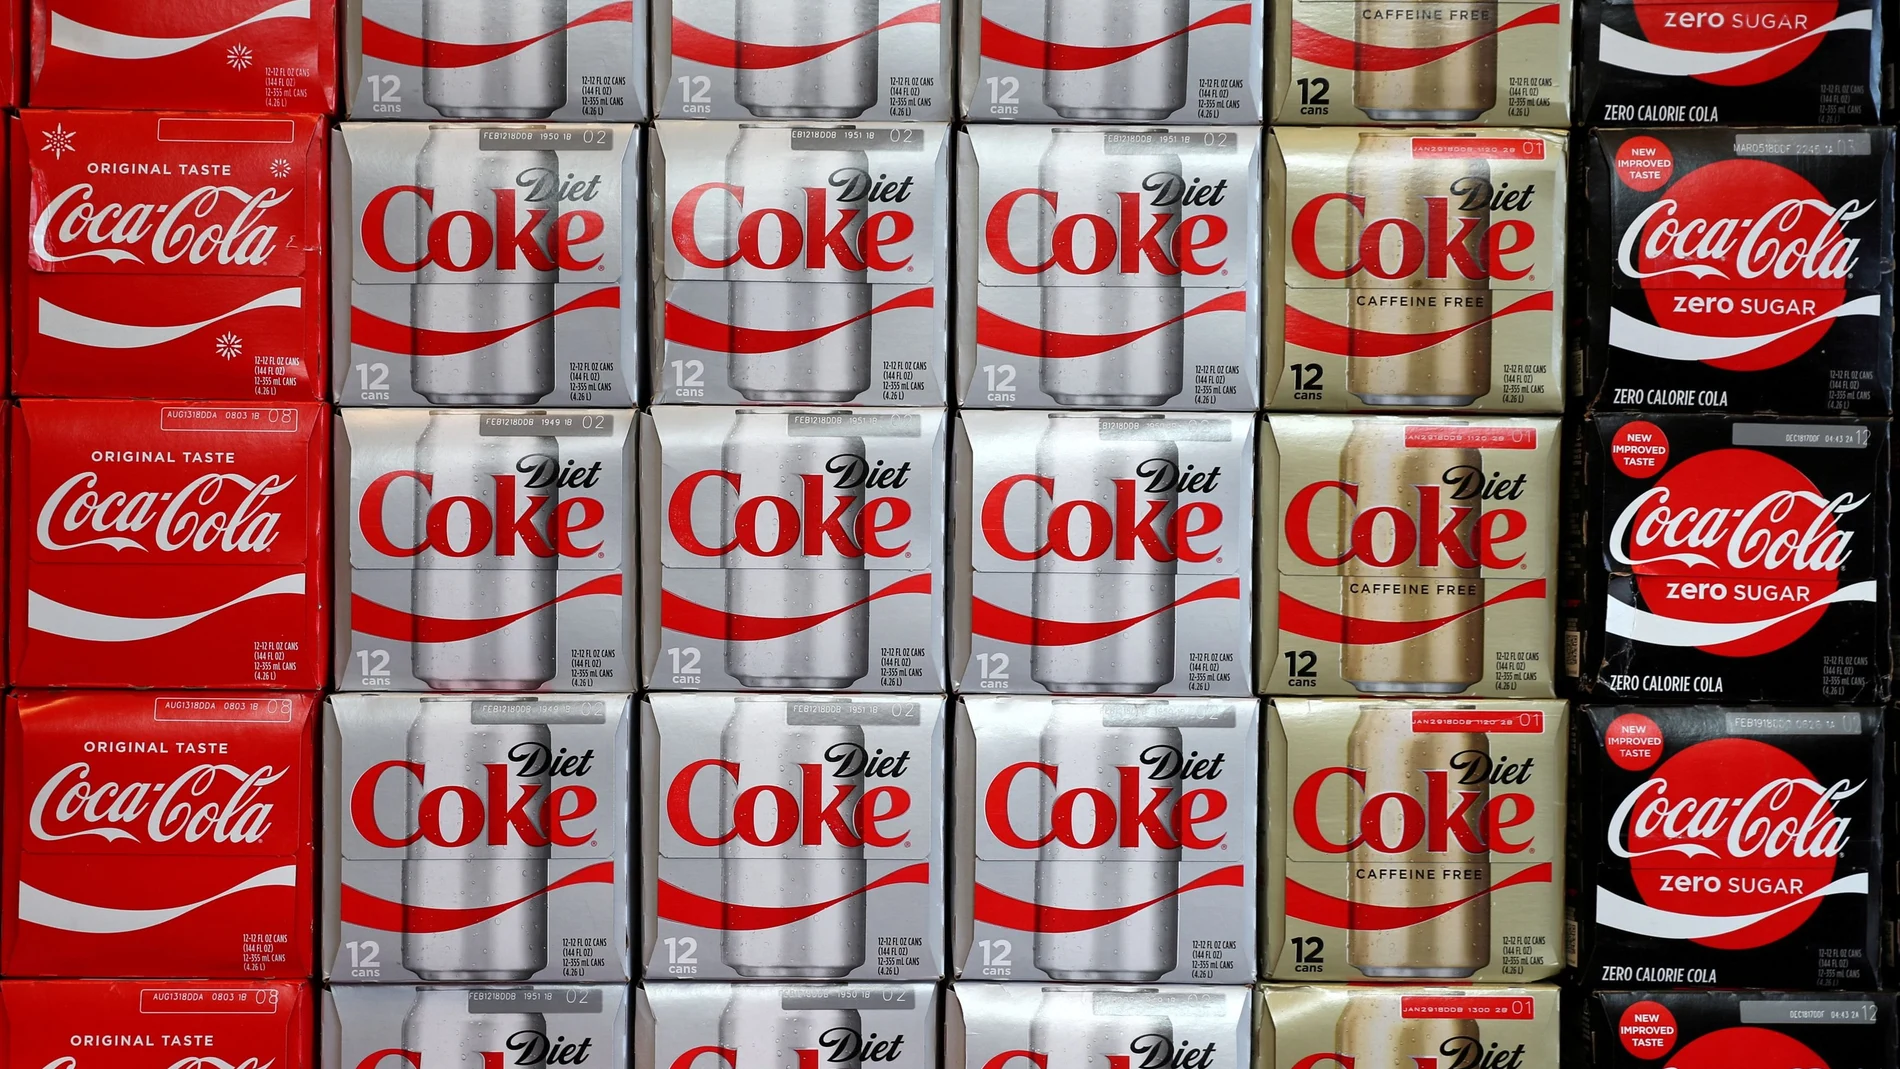 Las opciones sin azúcar representan el 63% del volumen de ventas de Coca-Cola en España